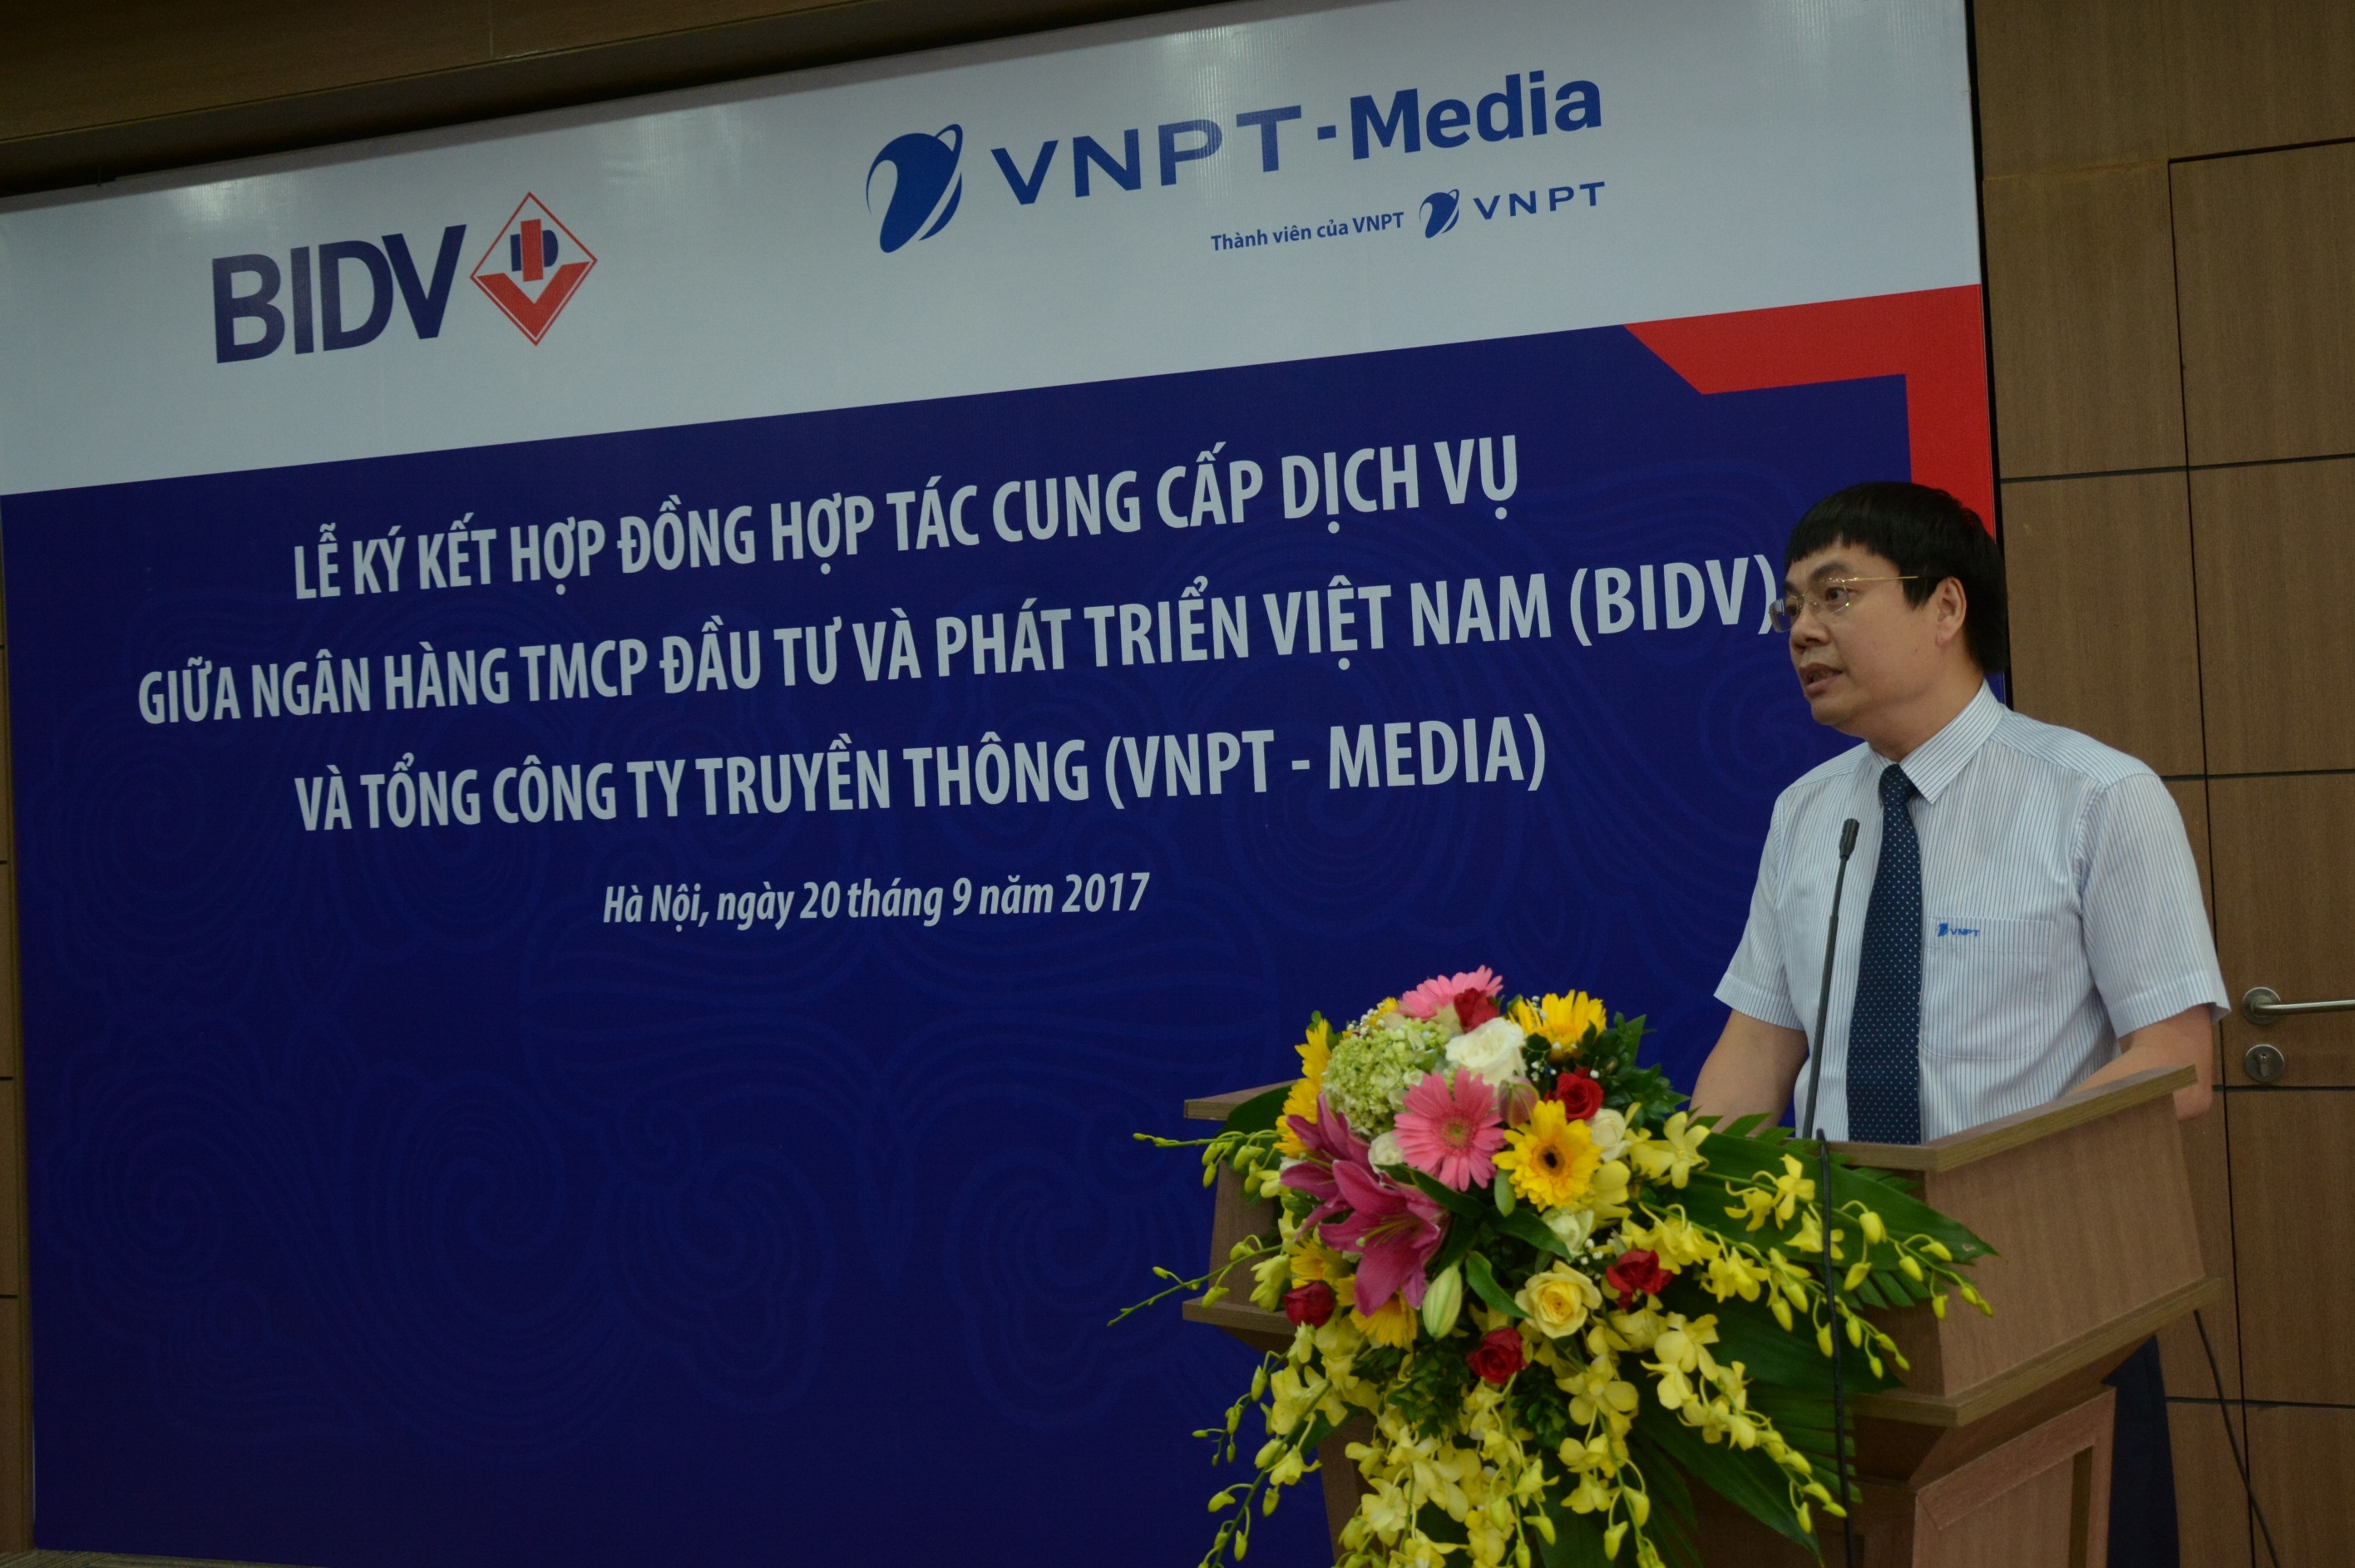 Ông Tô Mạnh Cường - Phó Tổng giám đốc Tập đoàn VNPT, kiêm Chủ tịch Tổng công ty VNPT-Media phát biểu tại buổi lễ